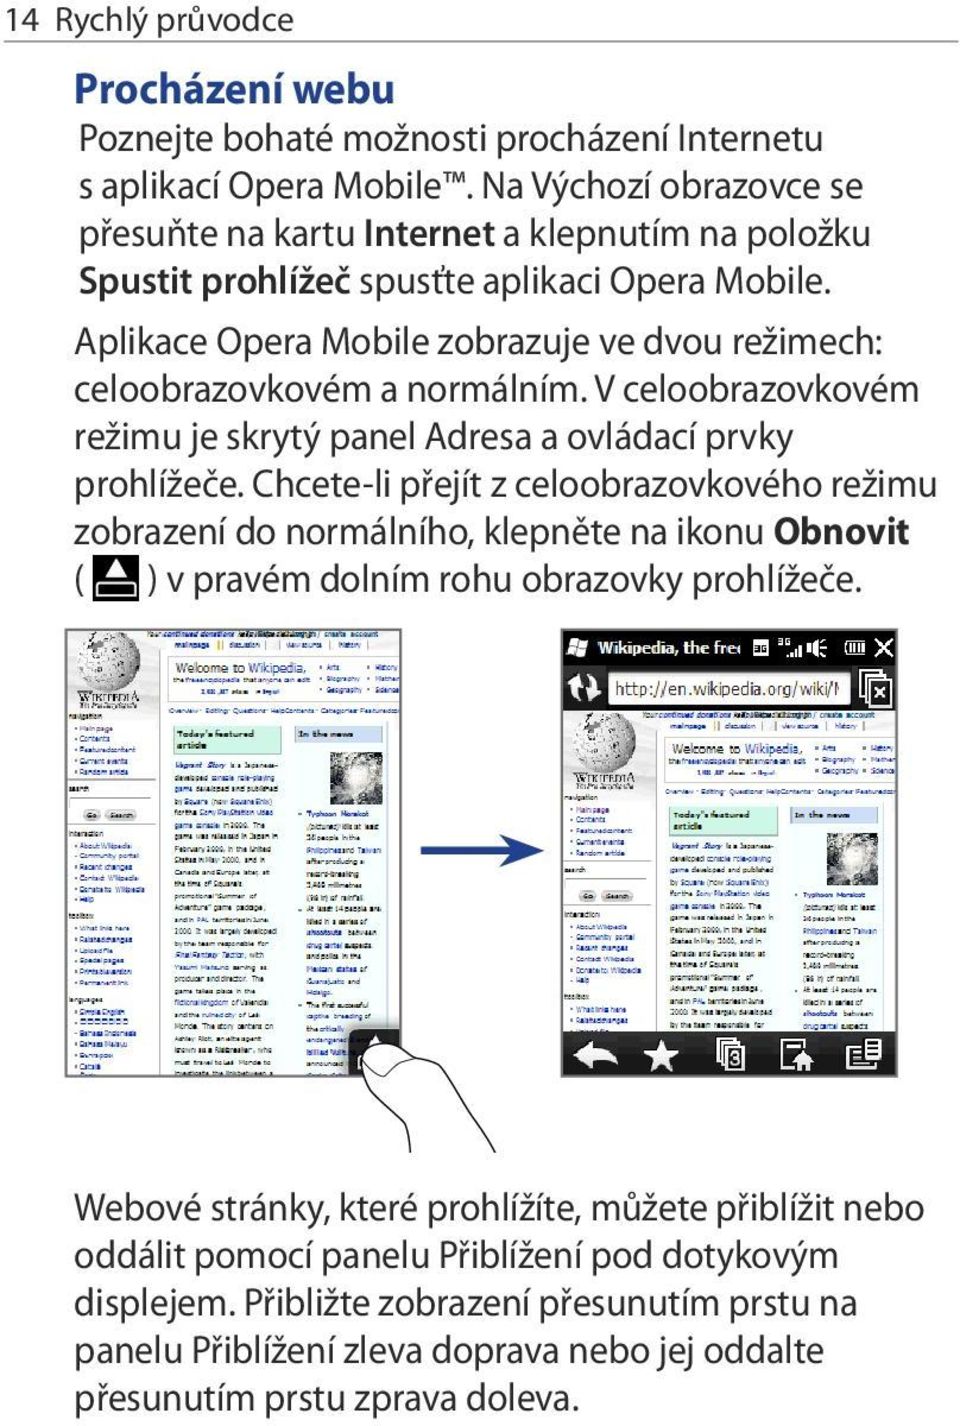 Aplikace Opera Mobile zobrazuje ve dvou režimech: celoobrazovkovém a normálním. V celoobrazovkovém režimu je skrytý panel Adresa a ovládací prvky prohlížeče.